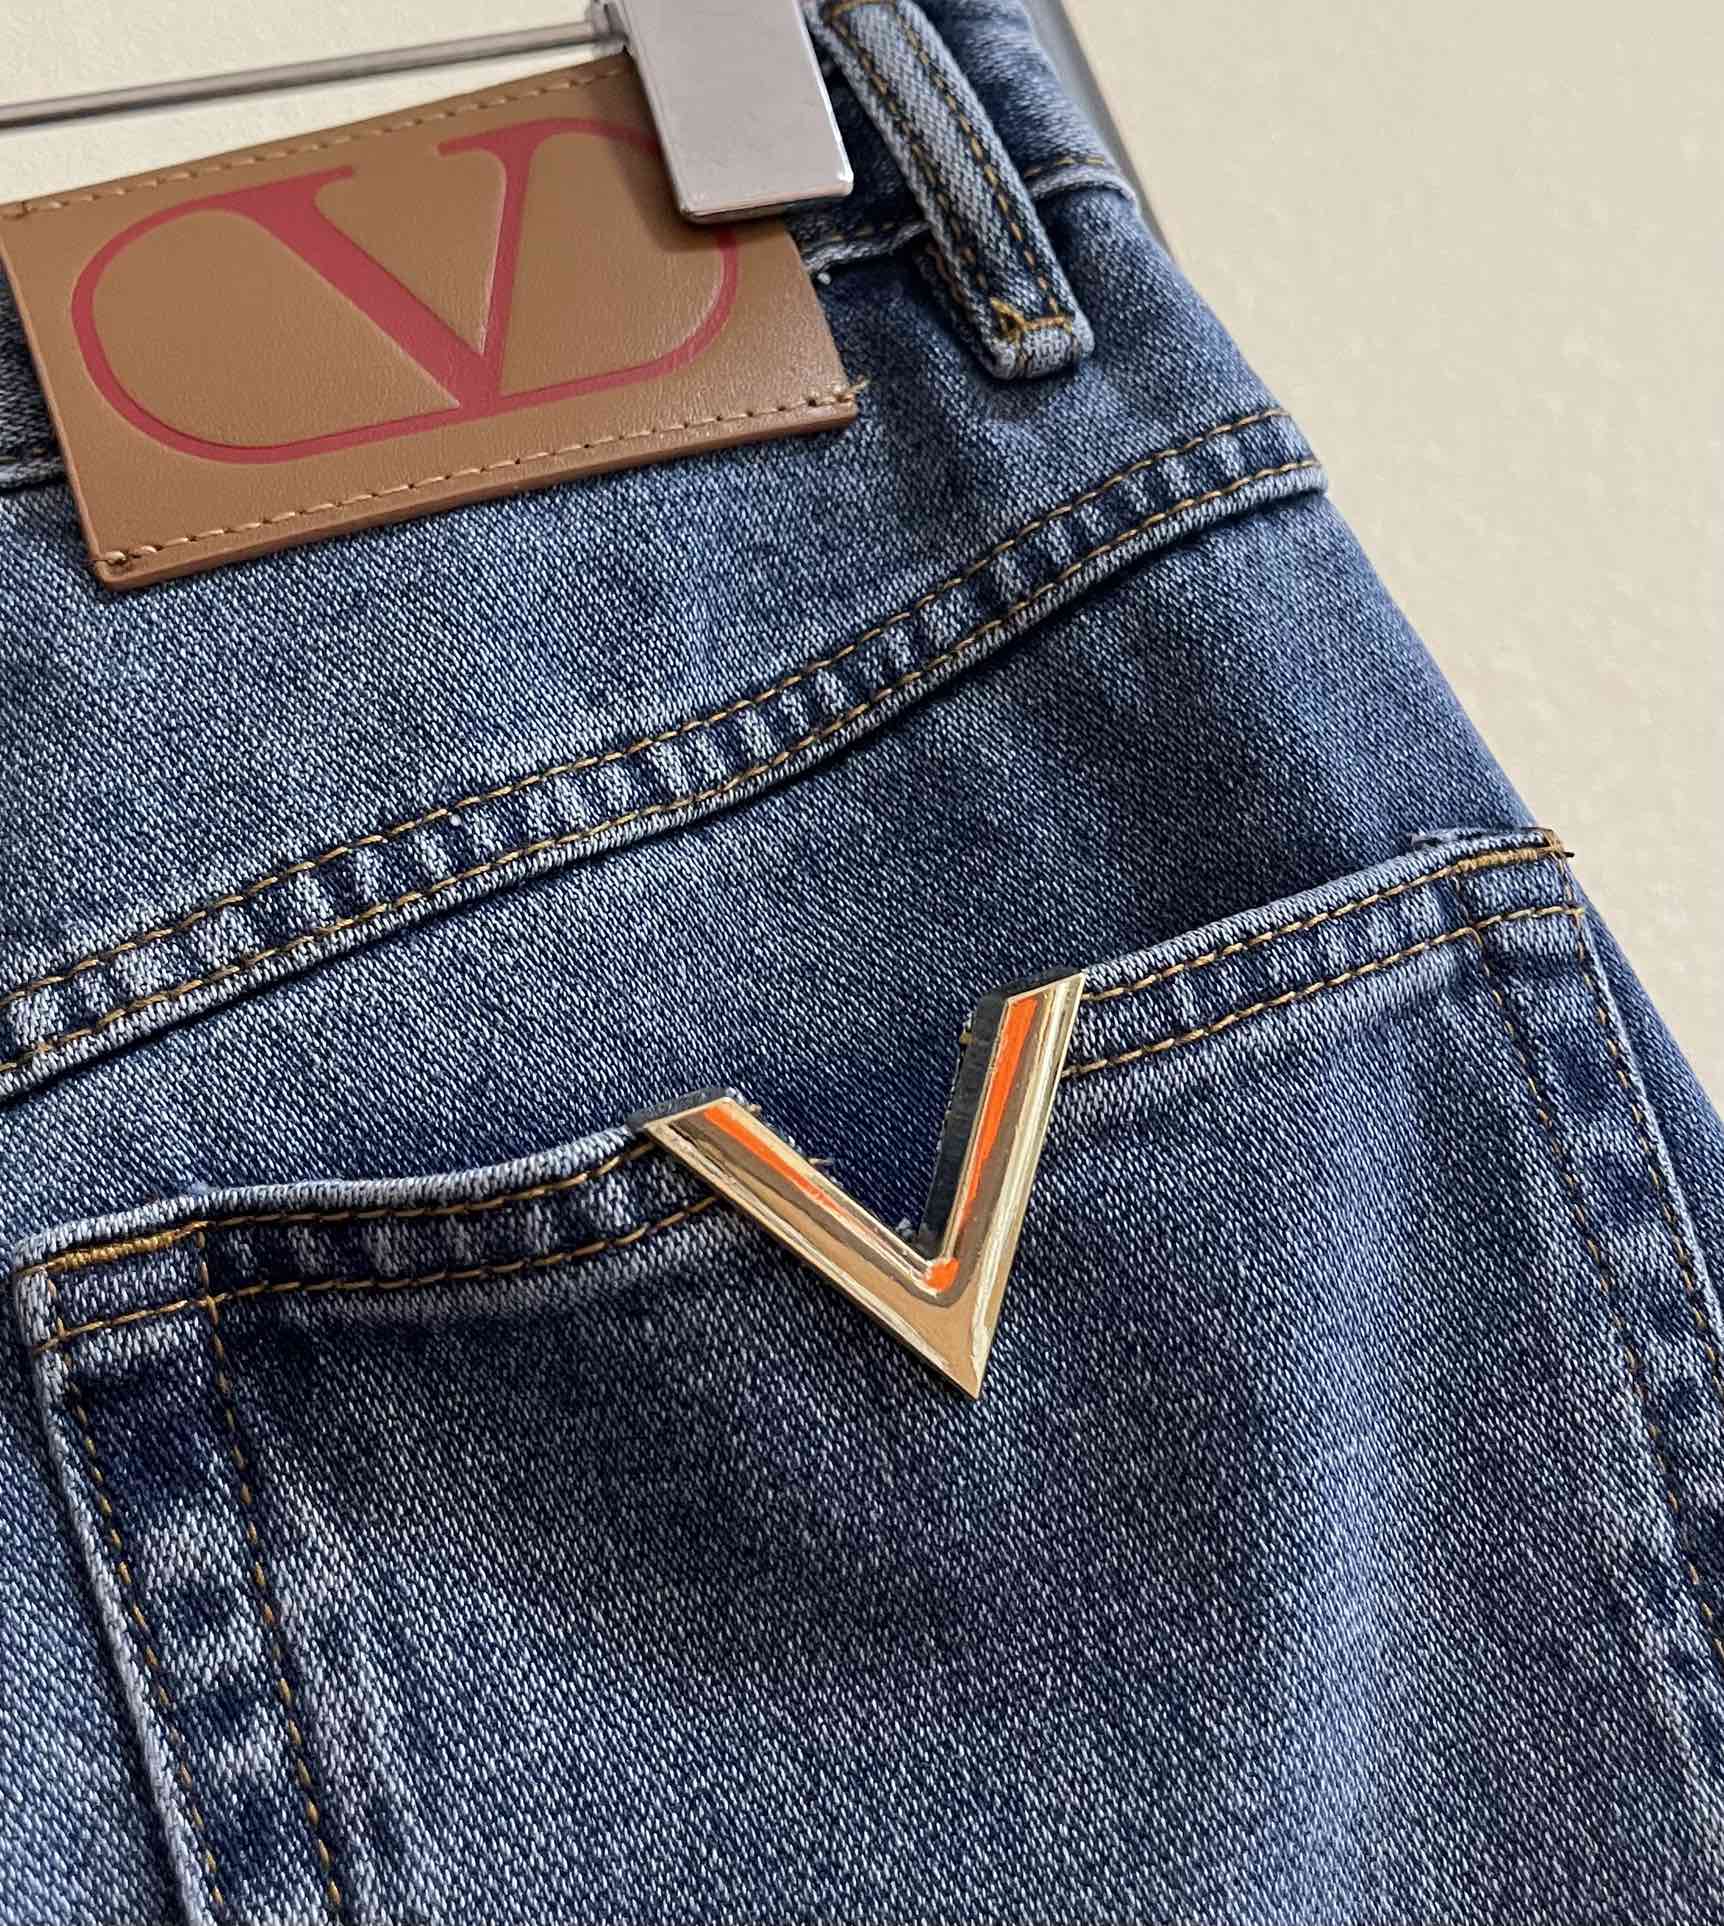 Valentino复古喇叭裤带一点点小微喇遮肉显瘦轻松穿出大长腿裤脚渐变色设计增加衣服的层次感与美感选优